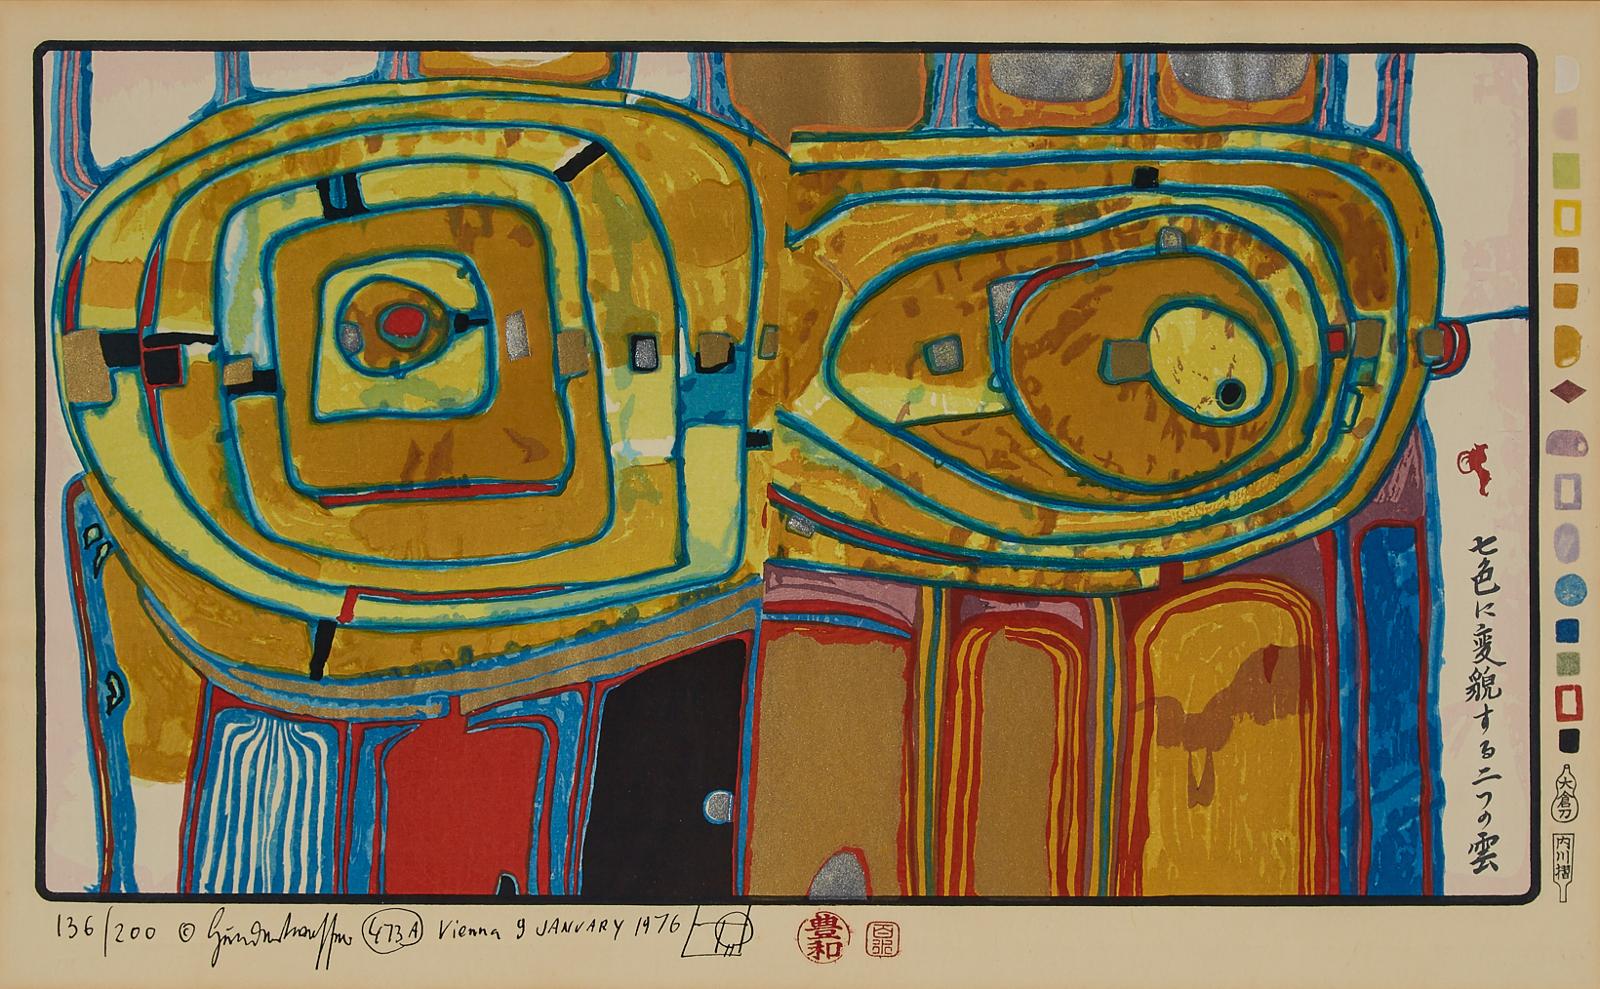 Friedensreich Hundertwasser (1928-2000) - Two Clouds Raining Seven Colours (From Midori No Namida, 1972), 1976 [koschatzky, Fürst Hwg 60]